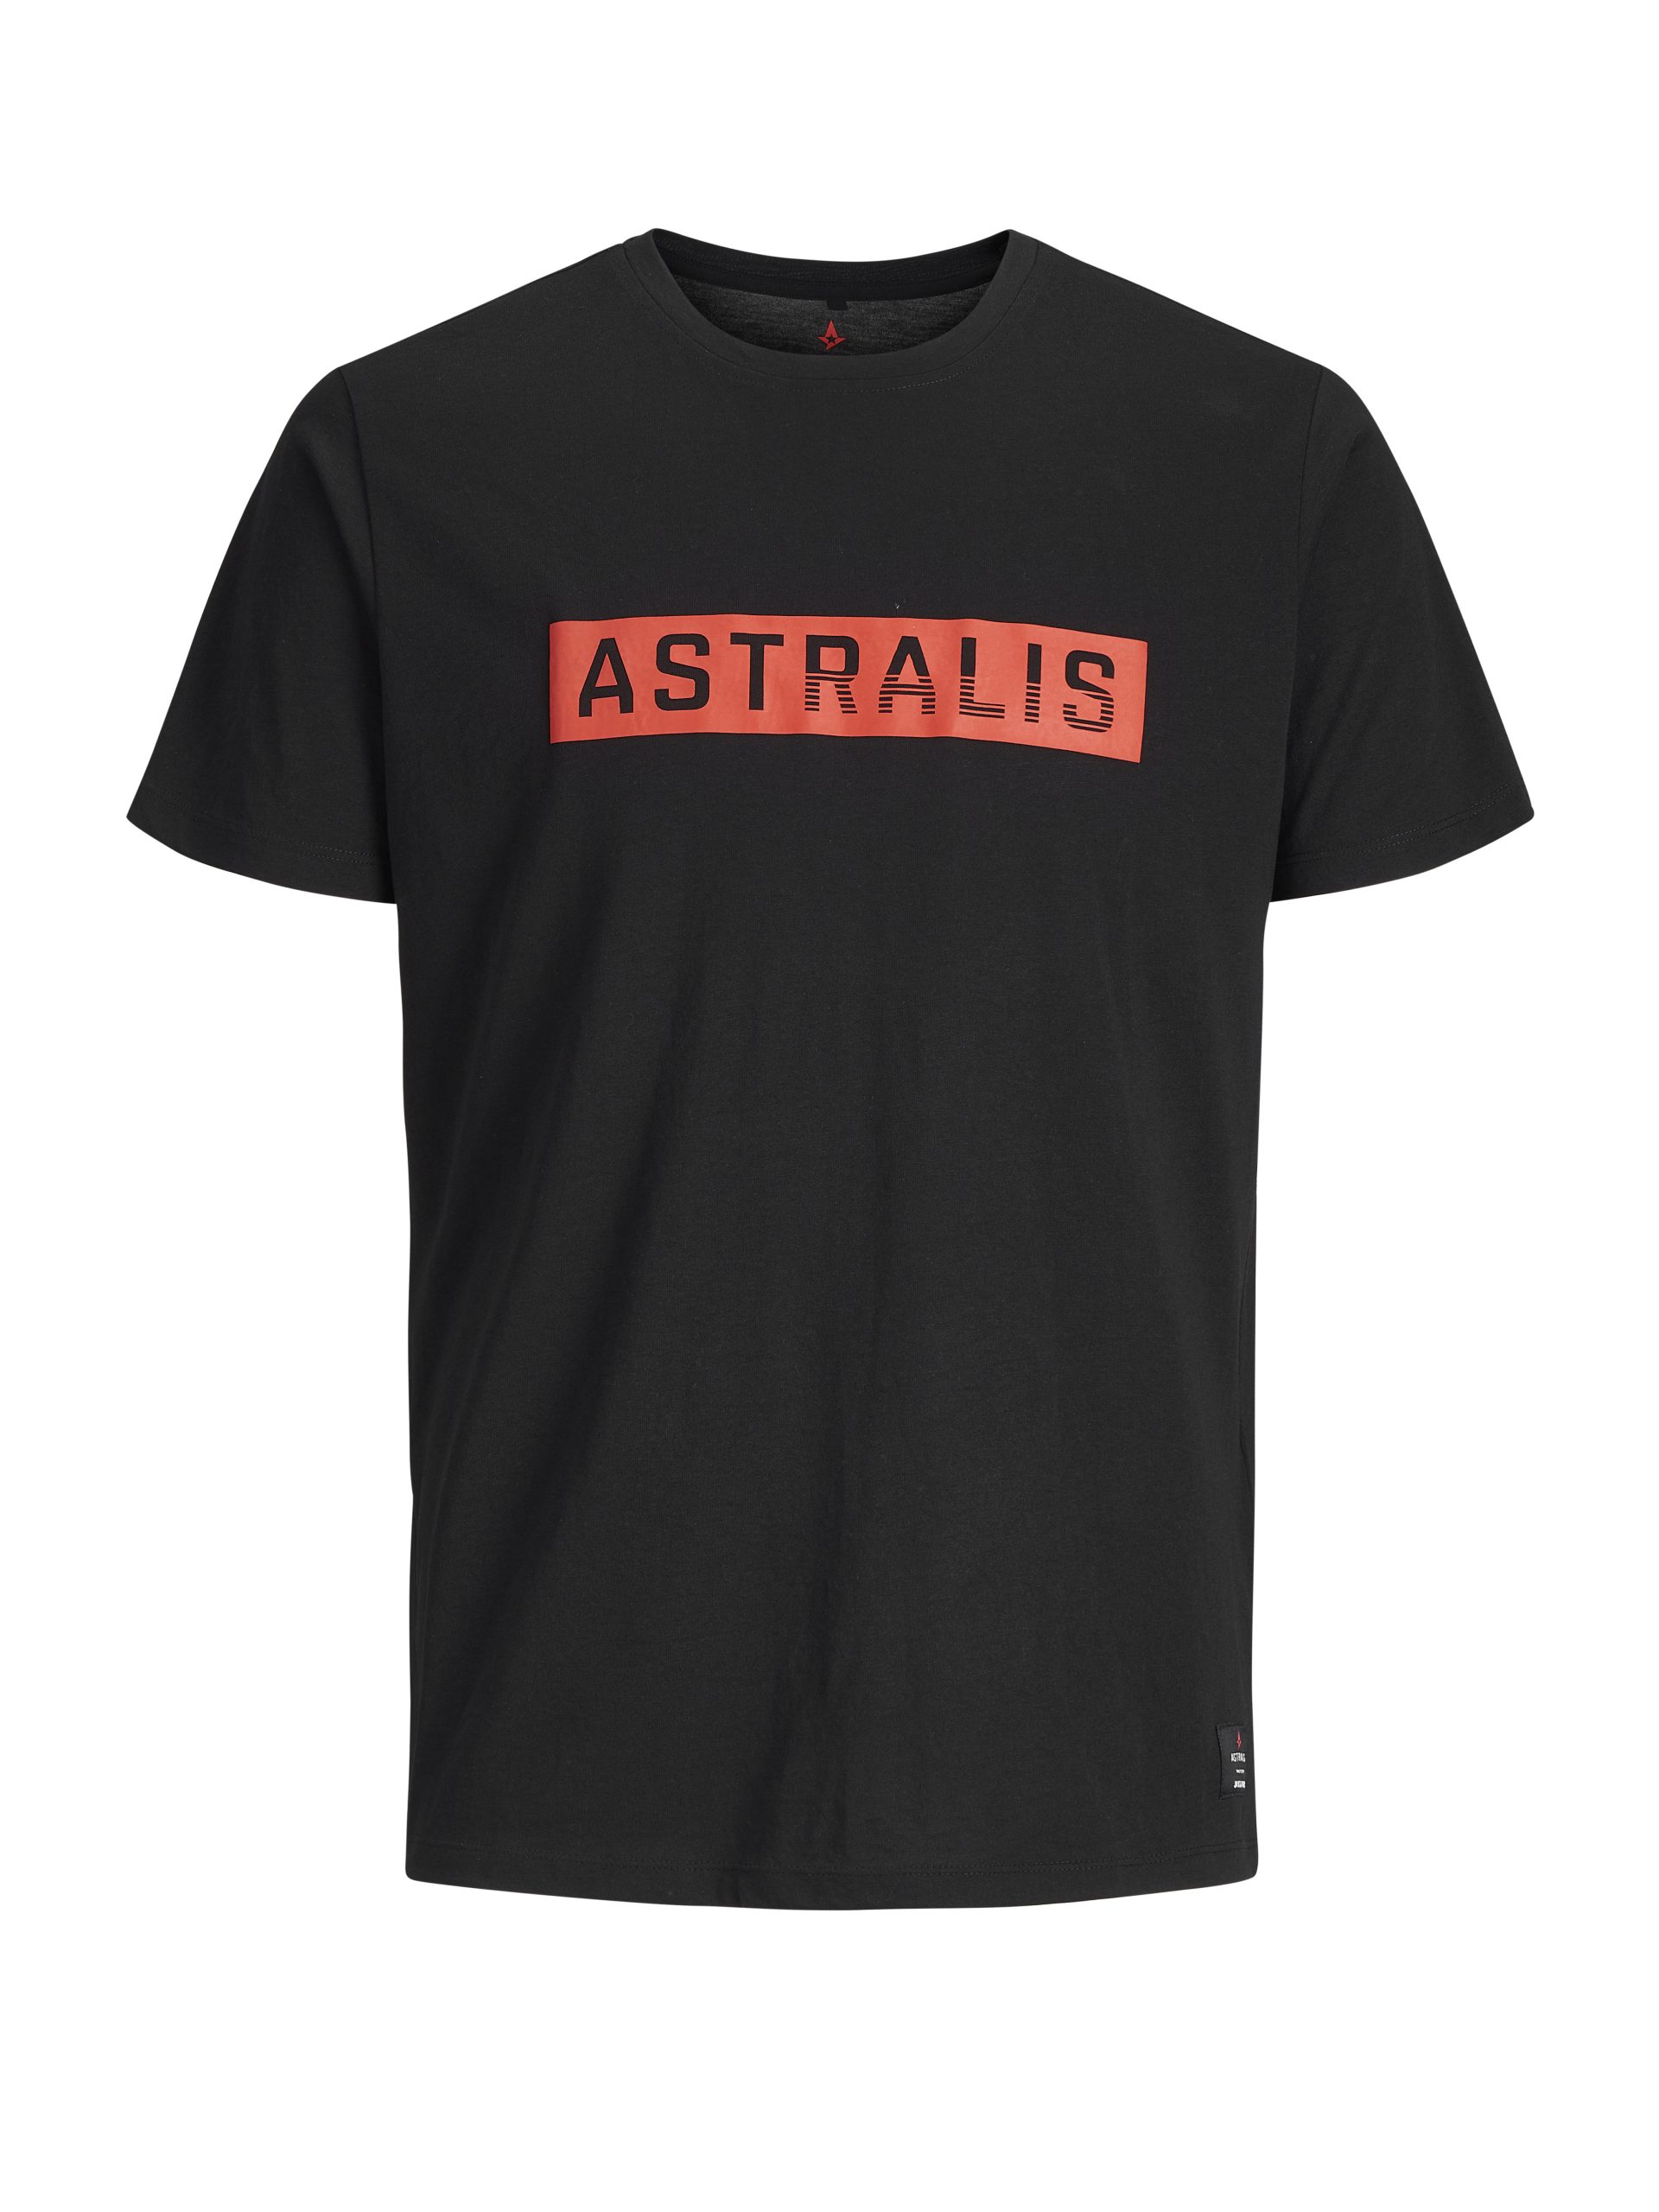 Astralis Merc T-Shirt SS 2019 - 10 Years